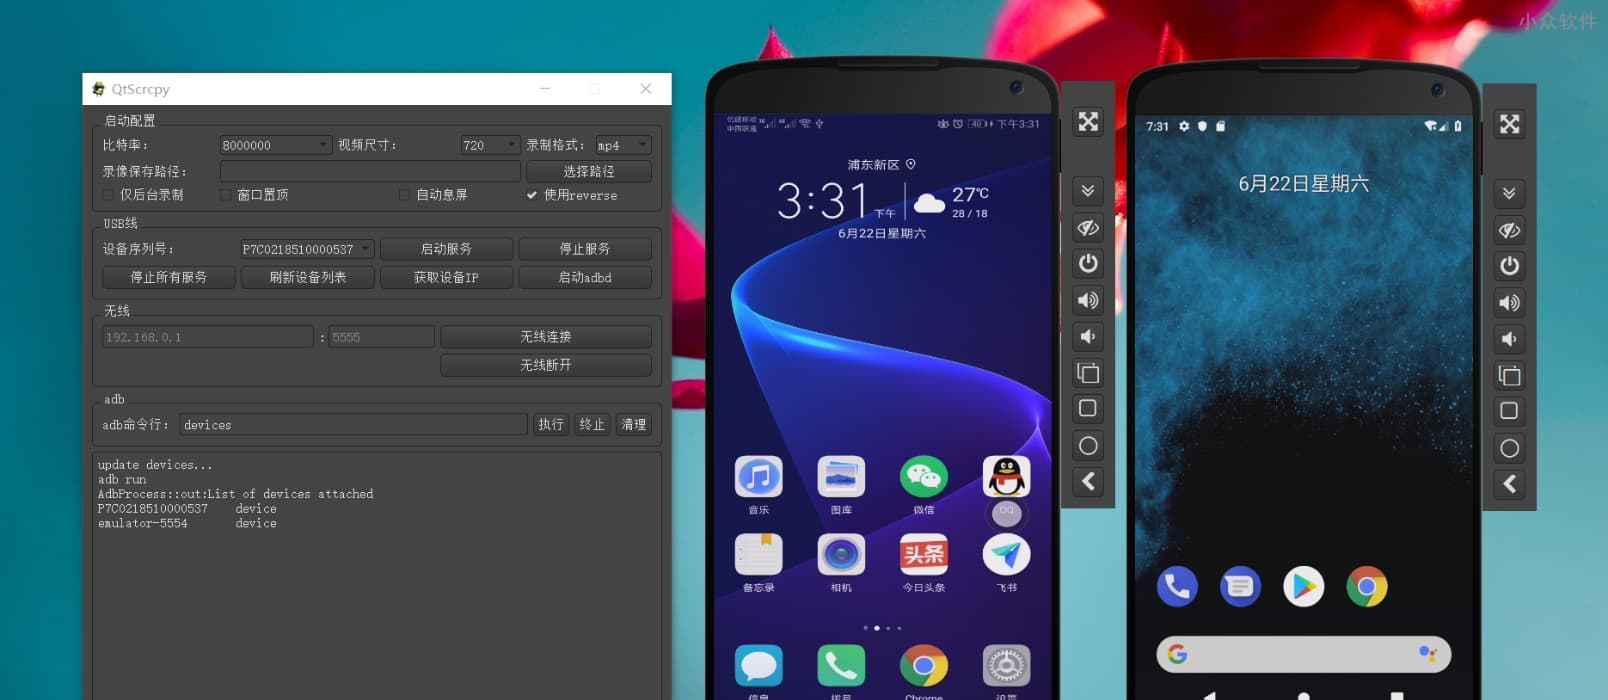 QtScrcpy - 用电脑控制 Android 手机，支持多点触控，可玩和平精英，中文界面[Win/macOS/Linux] 1